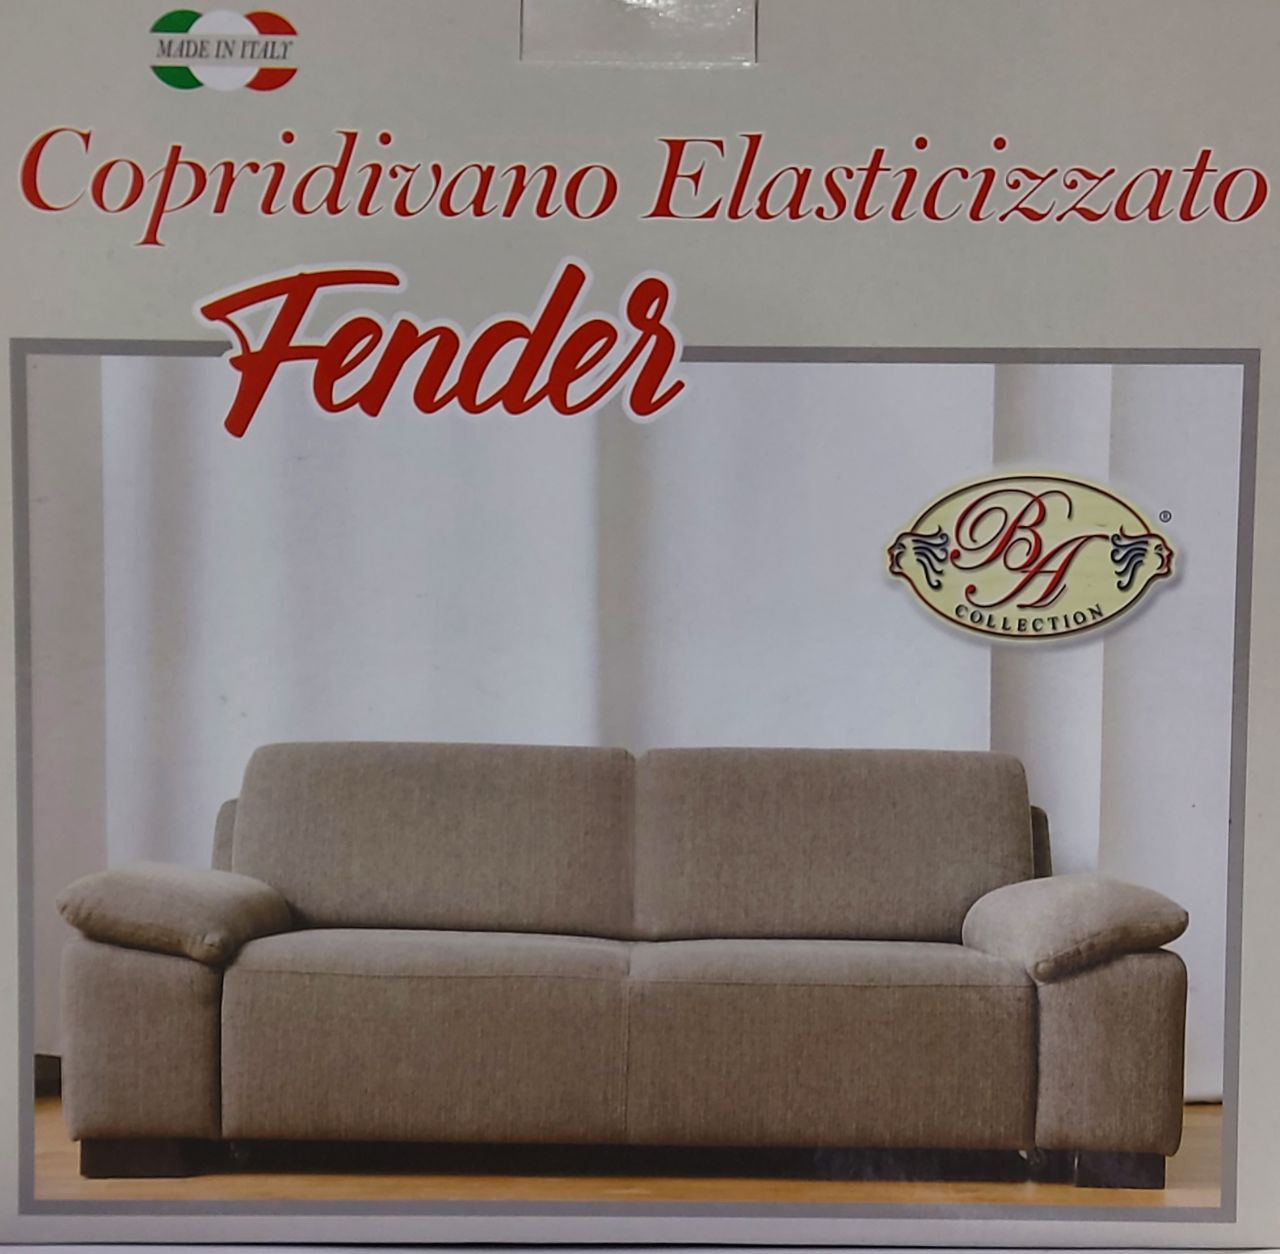 COPRIDIVANO FENDER 2 POSTI-BA COLLECTION ELASTICIZZATO -MADE IN